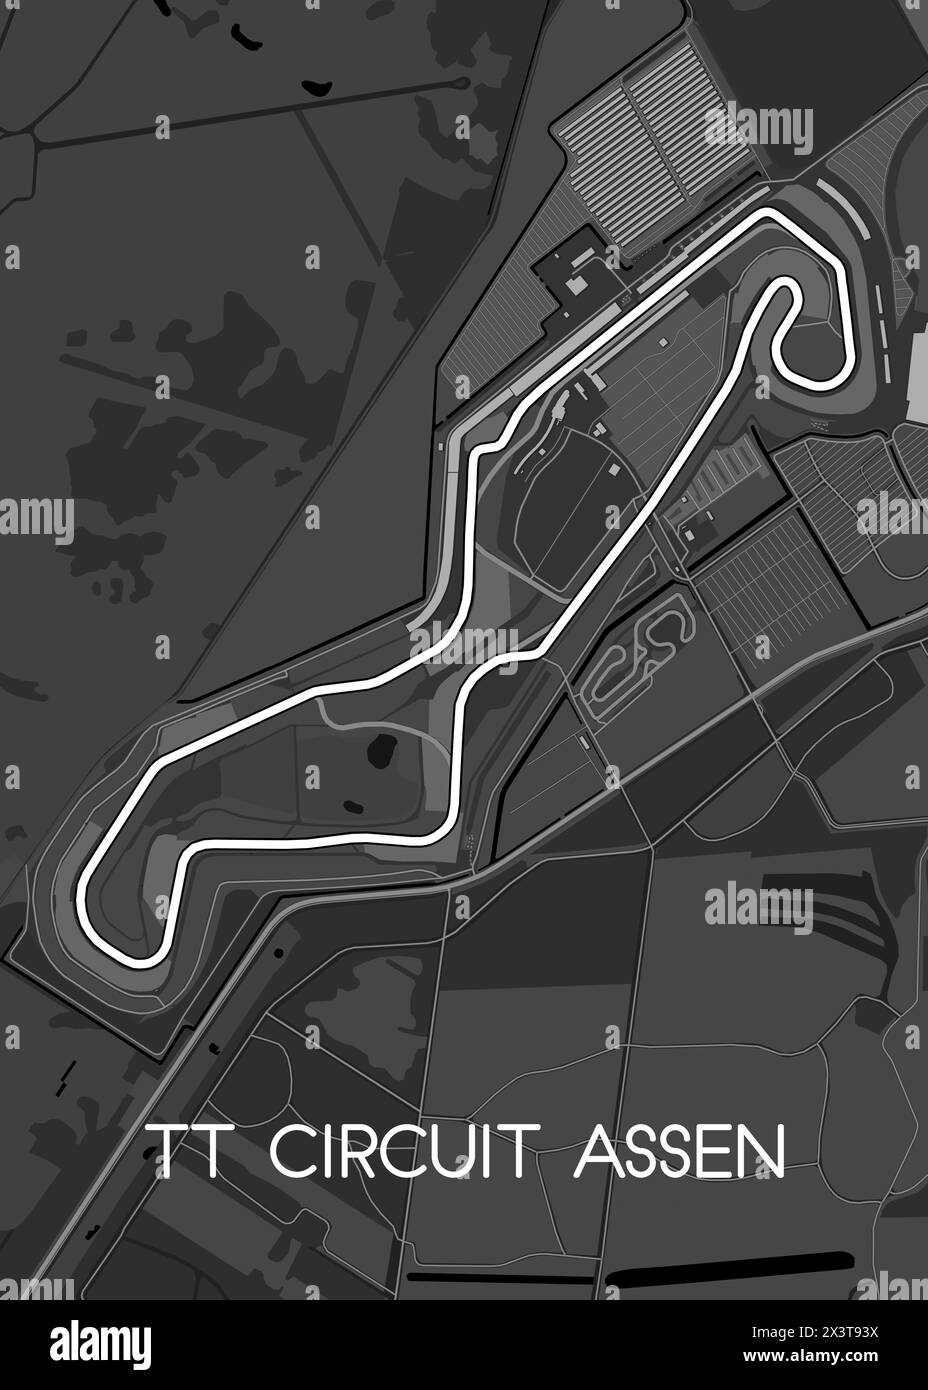 Le TT circuit Assen est un circuit de course automobile construit en 1955 et situé à Assen, aux pays-Bas. Hôte du TT néerlandais, Illustration de Vecteur